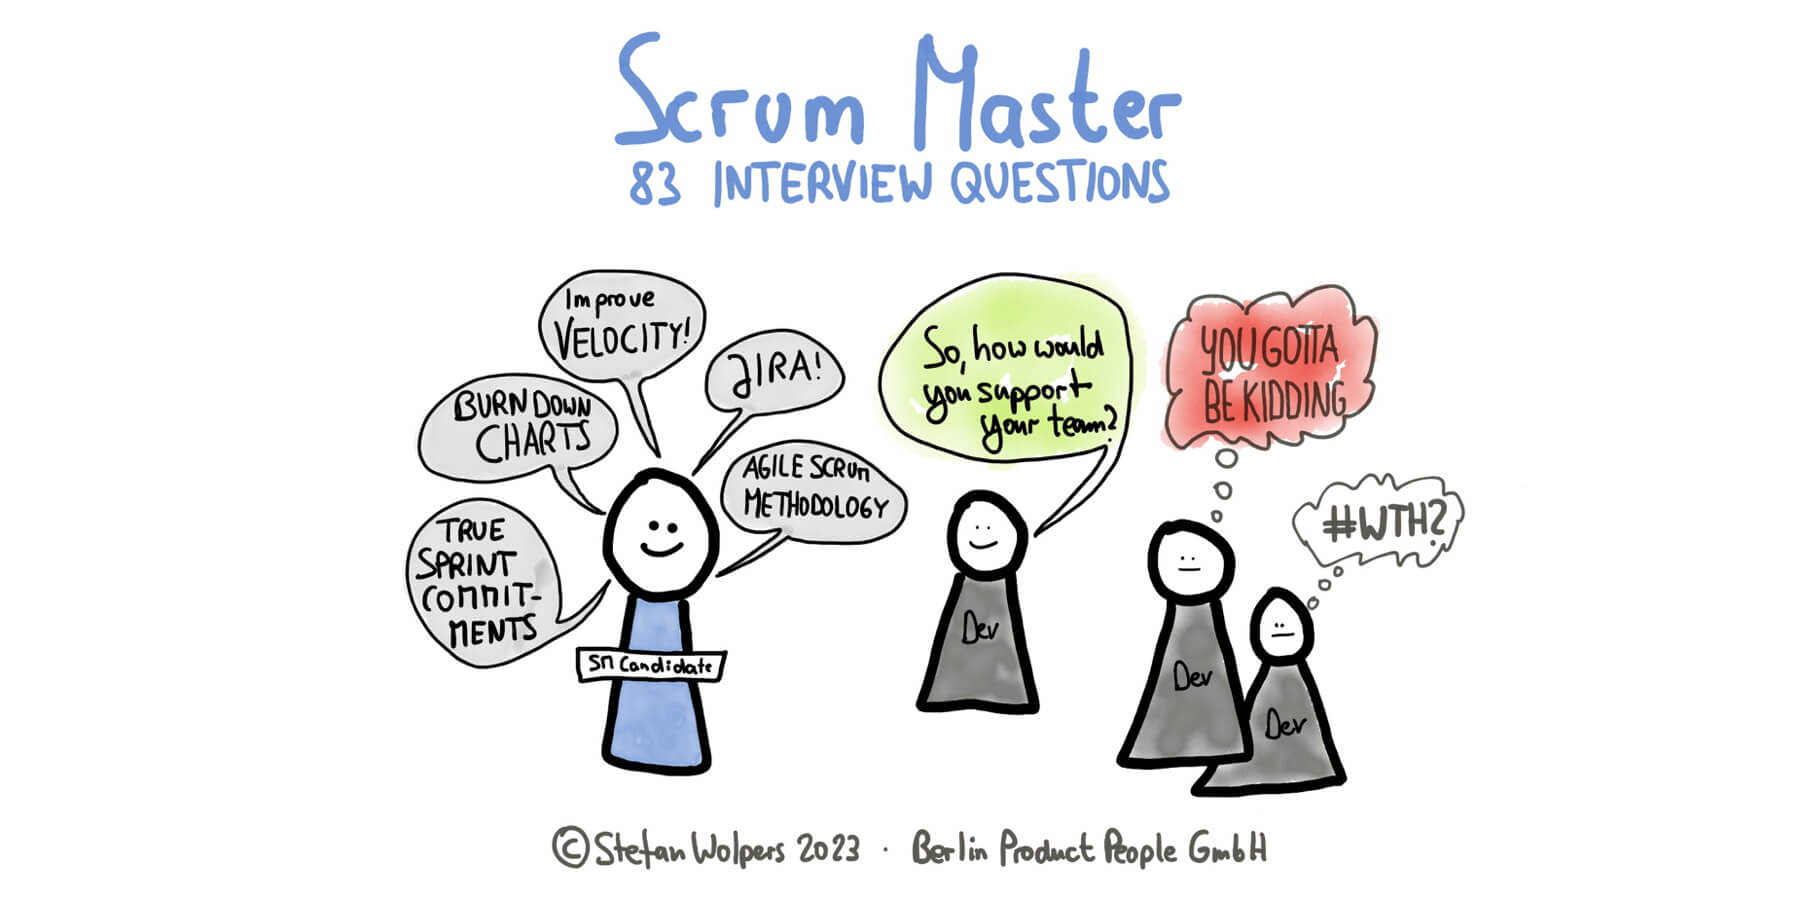 Scrum Master Interviewfragen zur Wertschöpfung mit Scrum — Berlin-Product-People.com